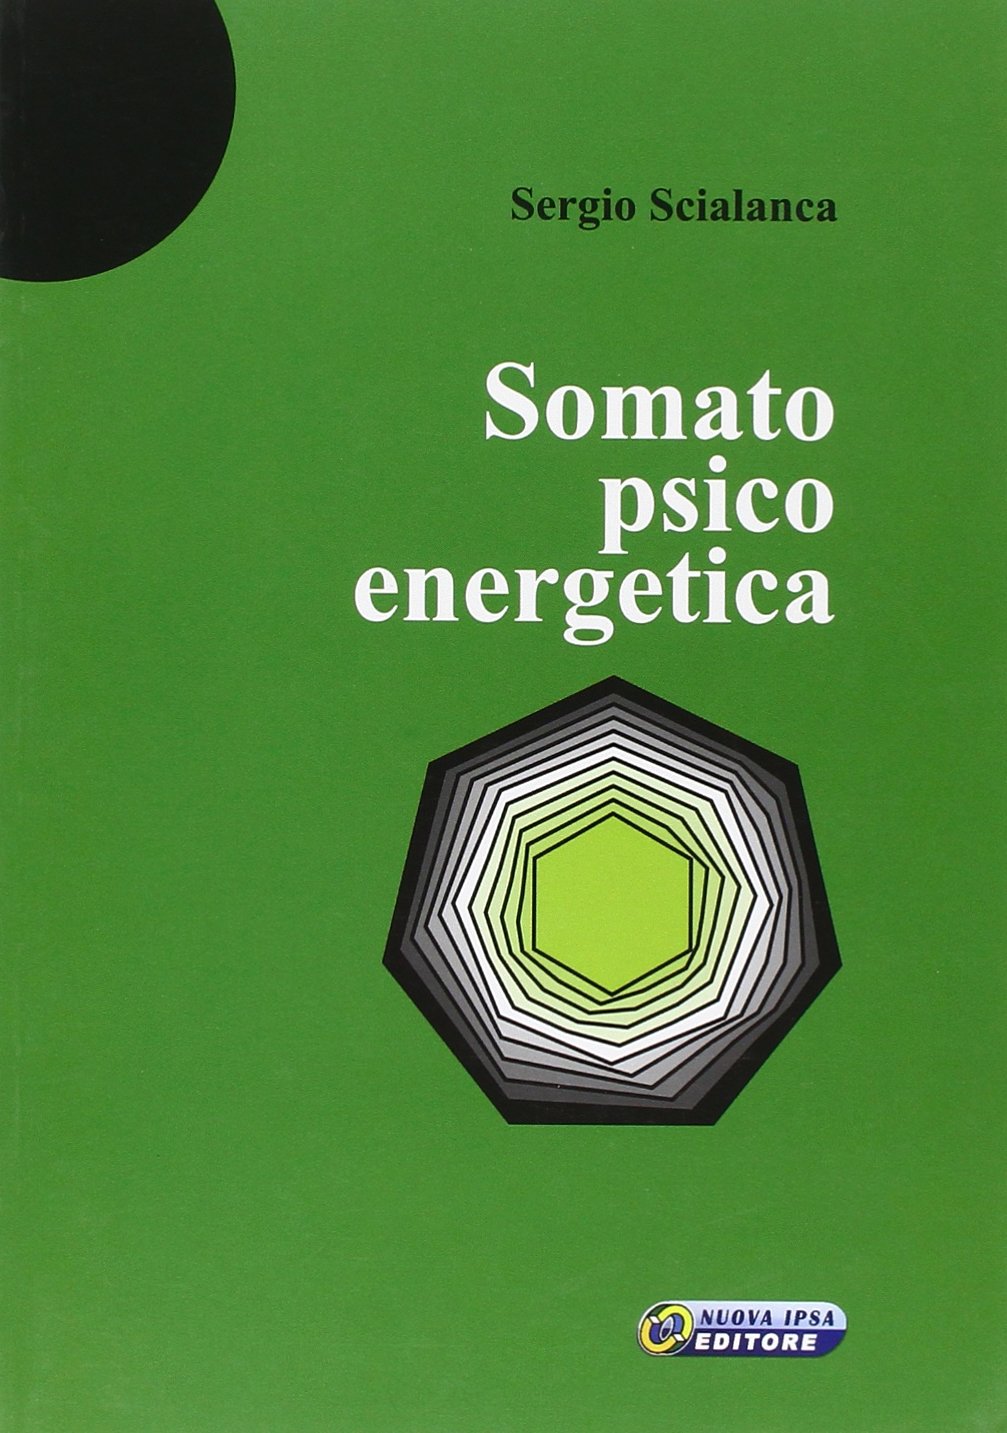 Libri Sergio Scialanca - Somatopsicoenergetica NUOVO SIGILLATO, EDIZIONE DEL 01/03/2008 SUBITO DISPONIBILE